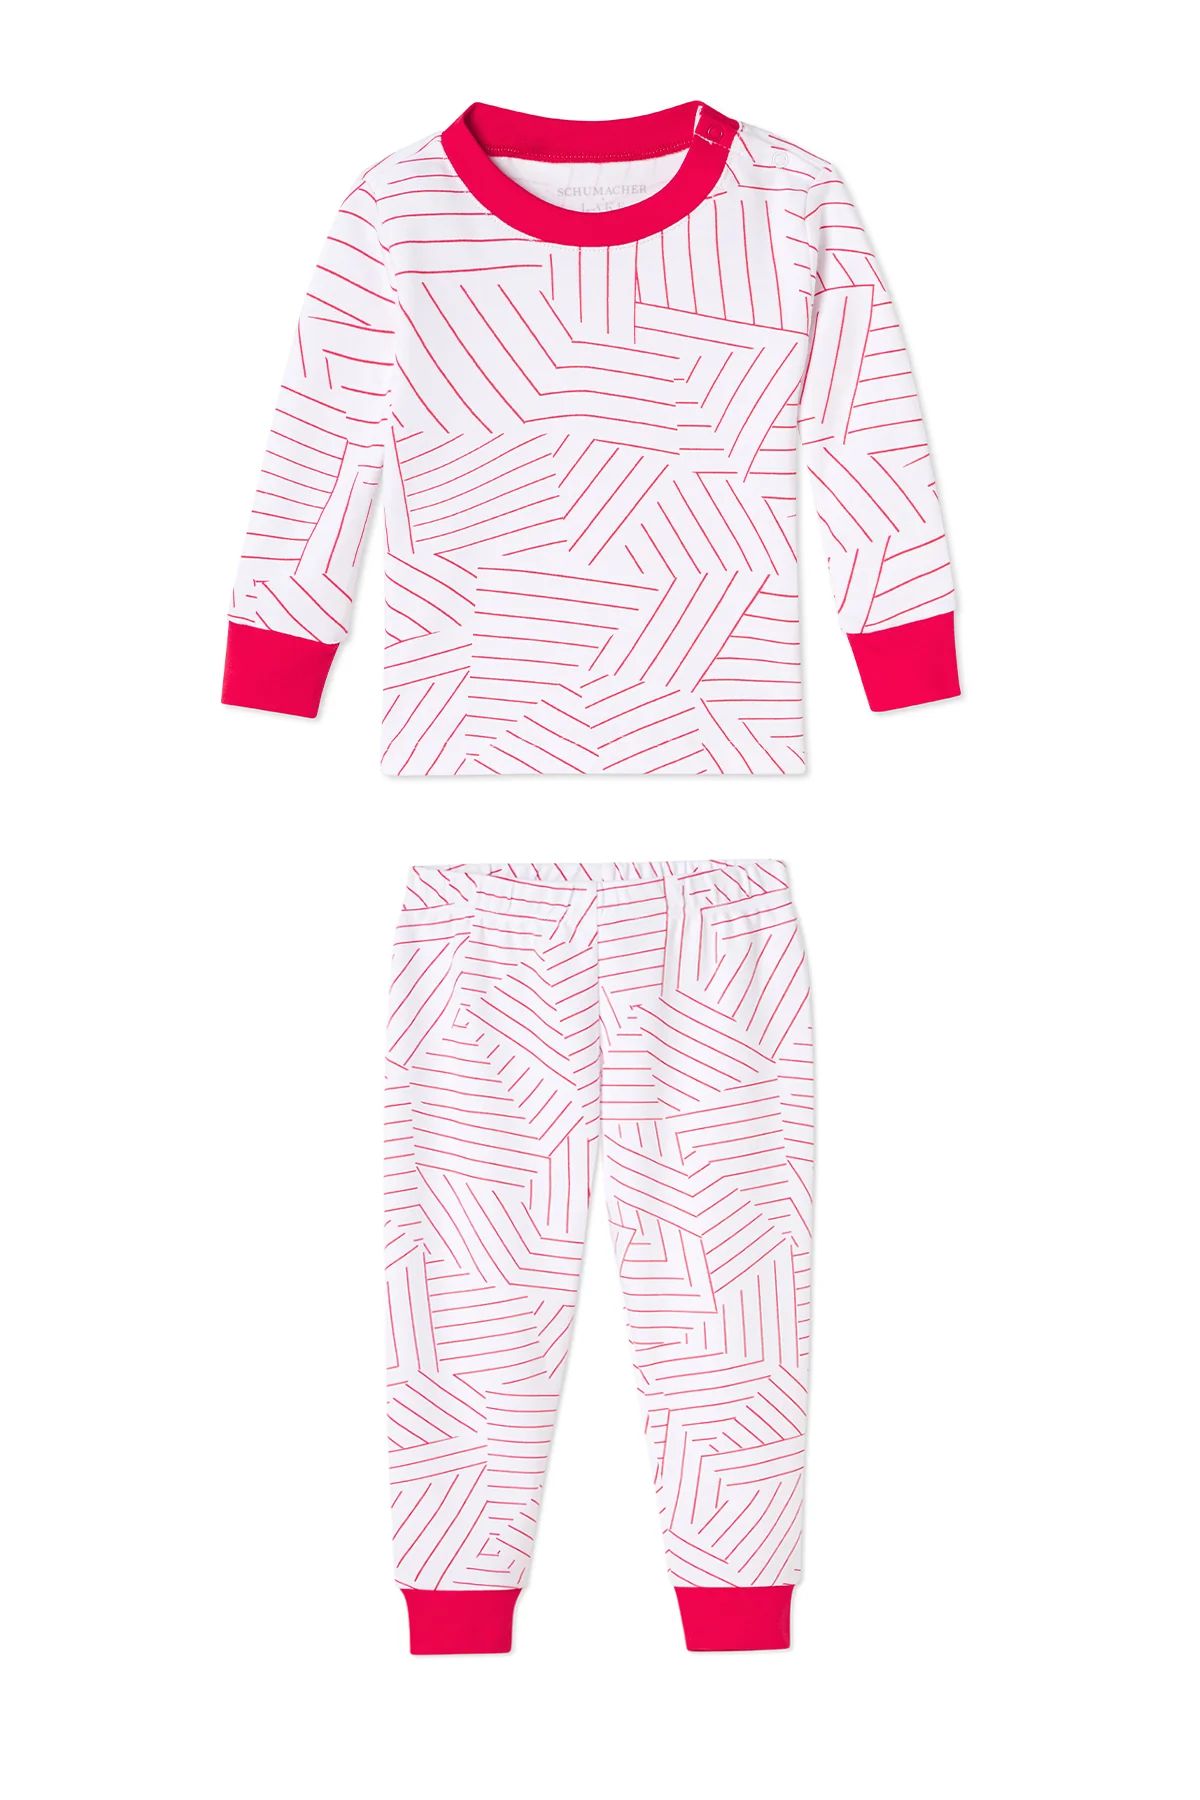 Schumacher x LAKE Baby Long-Long Set in Red | Lake Pajamas